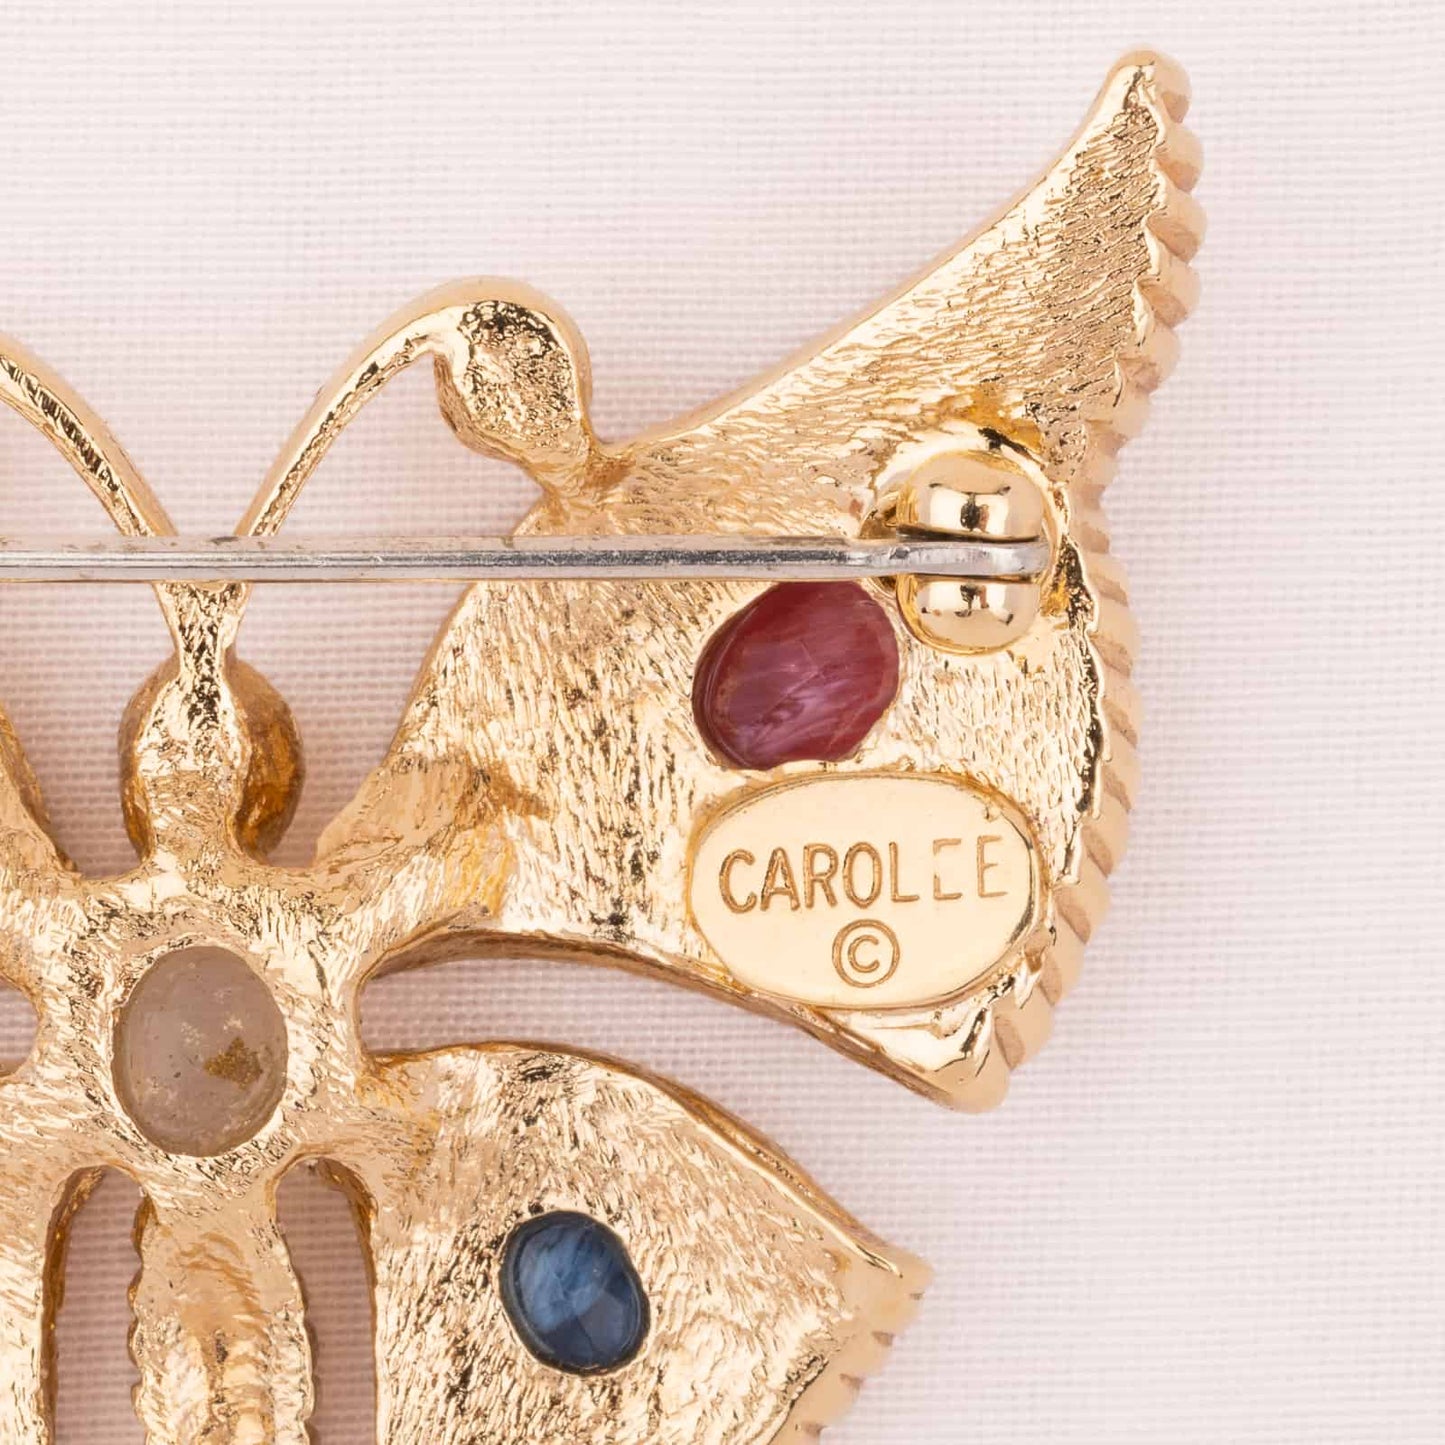 Carolee-Schmetterling-Brosche-Rückseite-Signatur